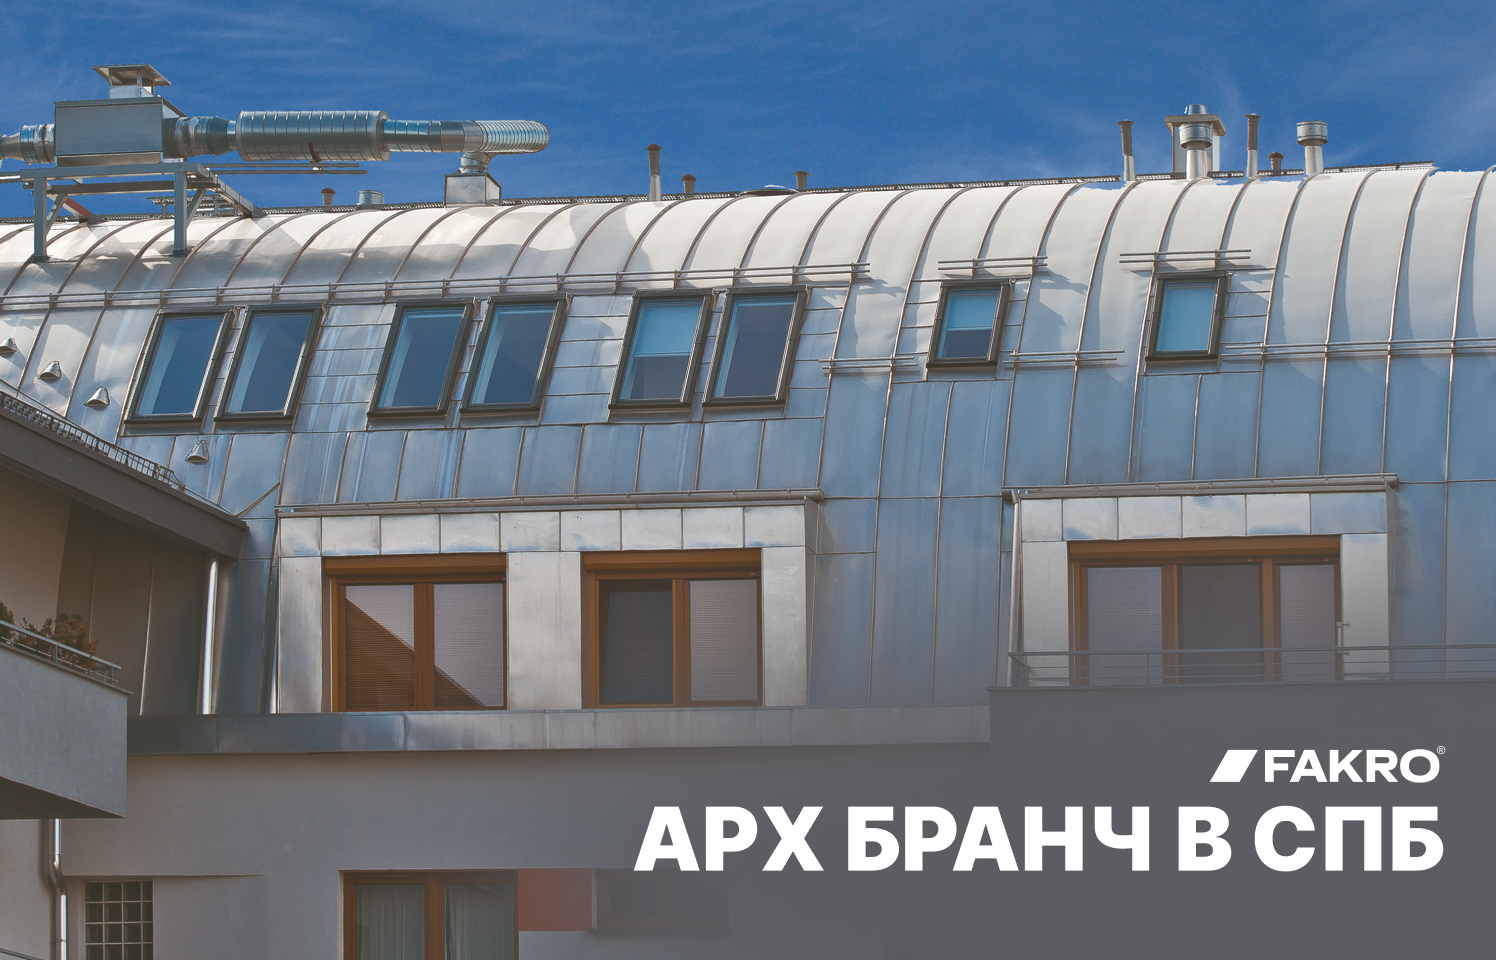 Архитектурный бранч в Санкт-Петербурге